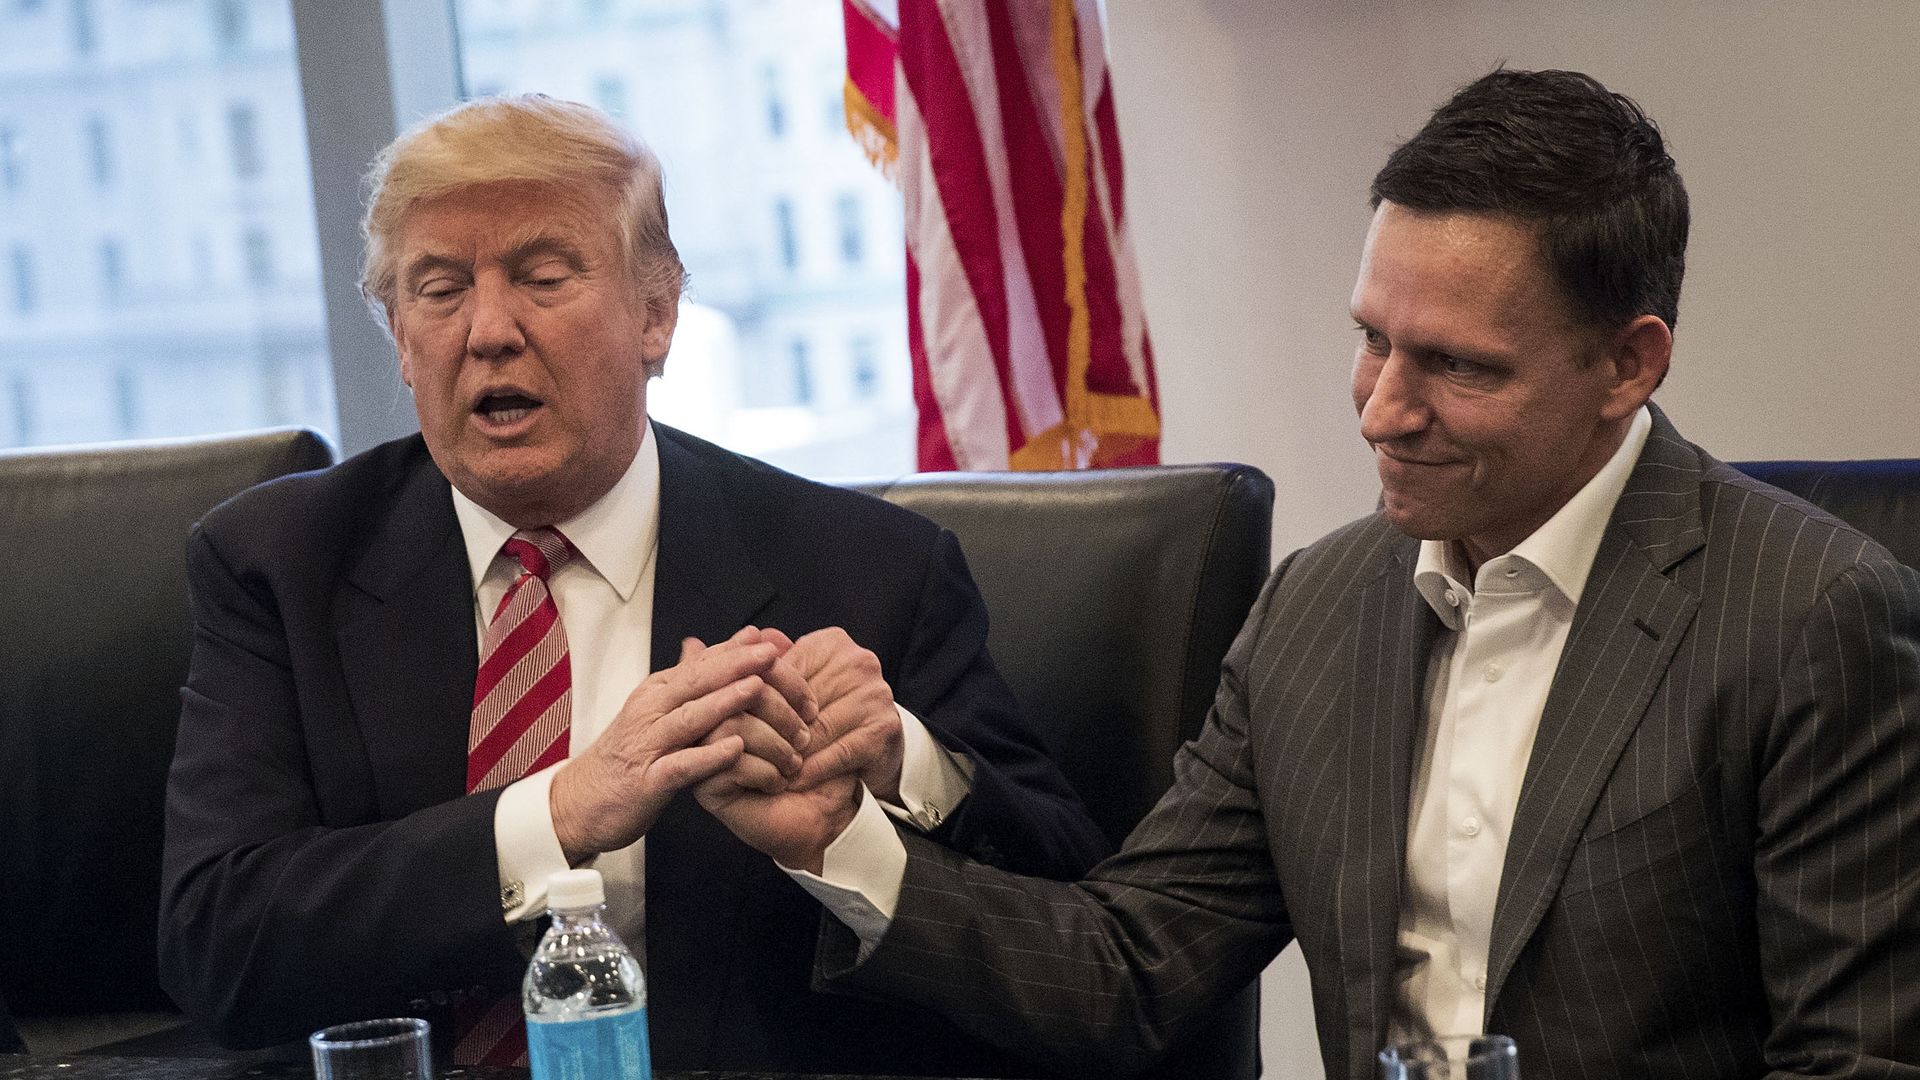 Trump and Thiel